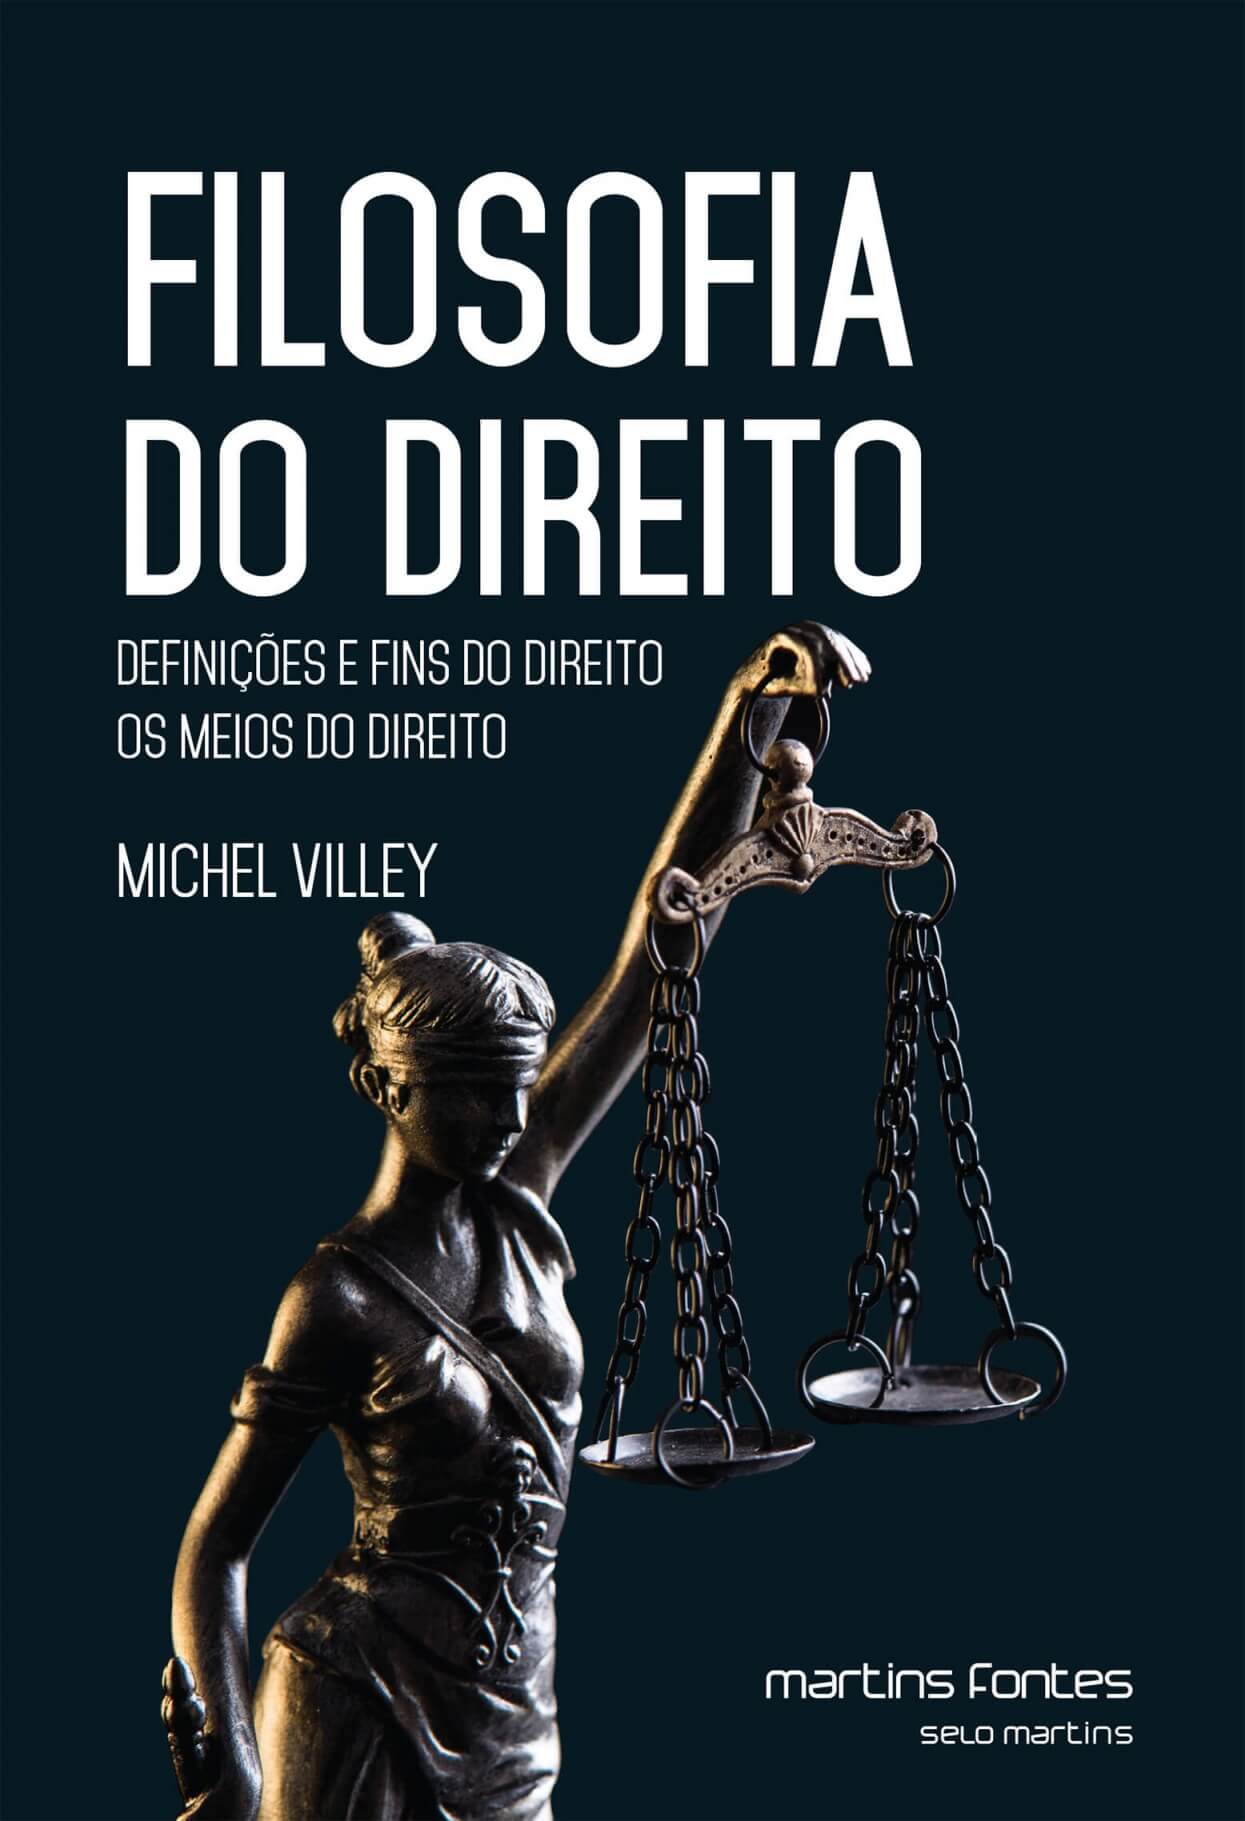 Filosofia do Direito: Definições e fins do Direito - Os meios do Direito